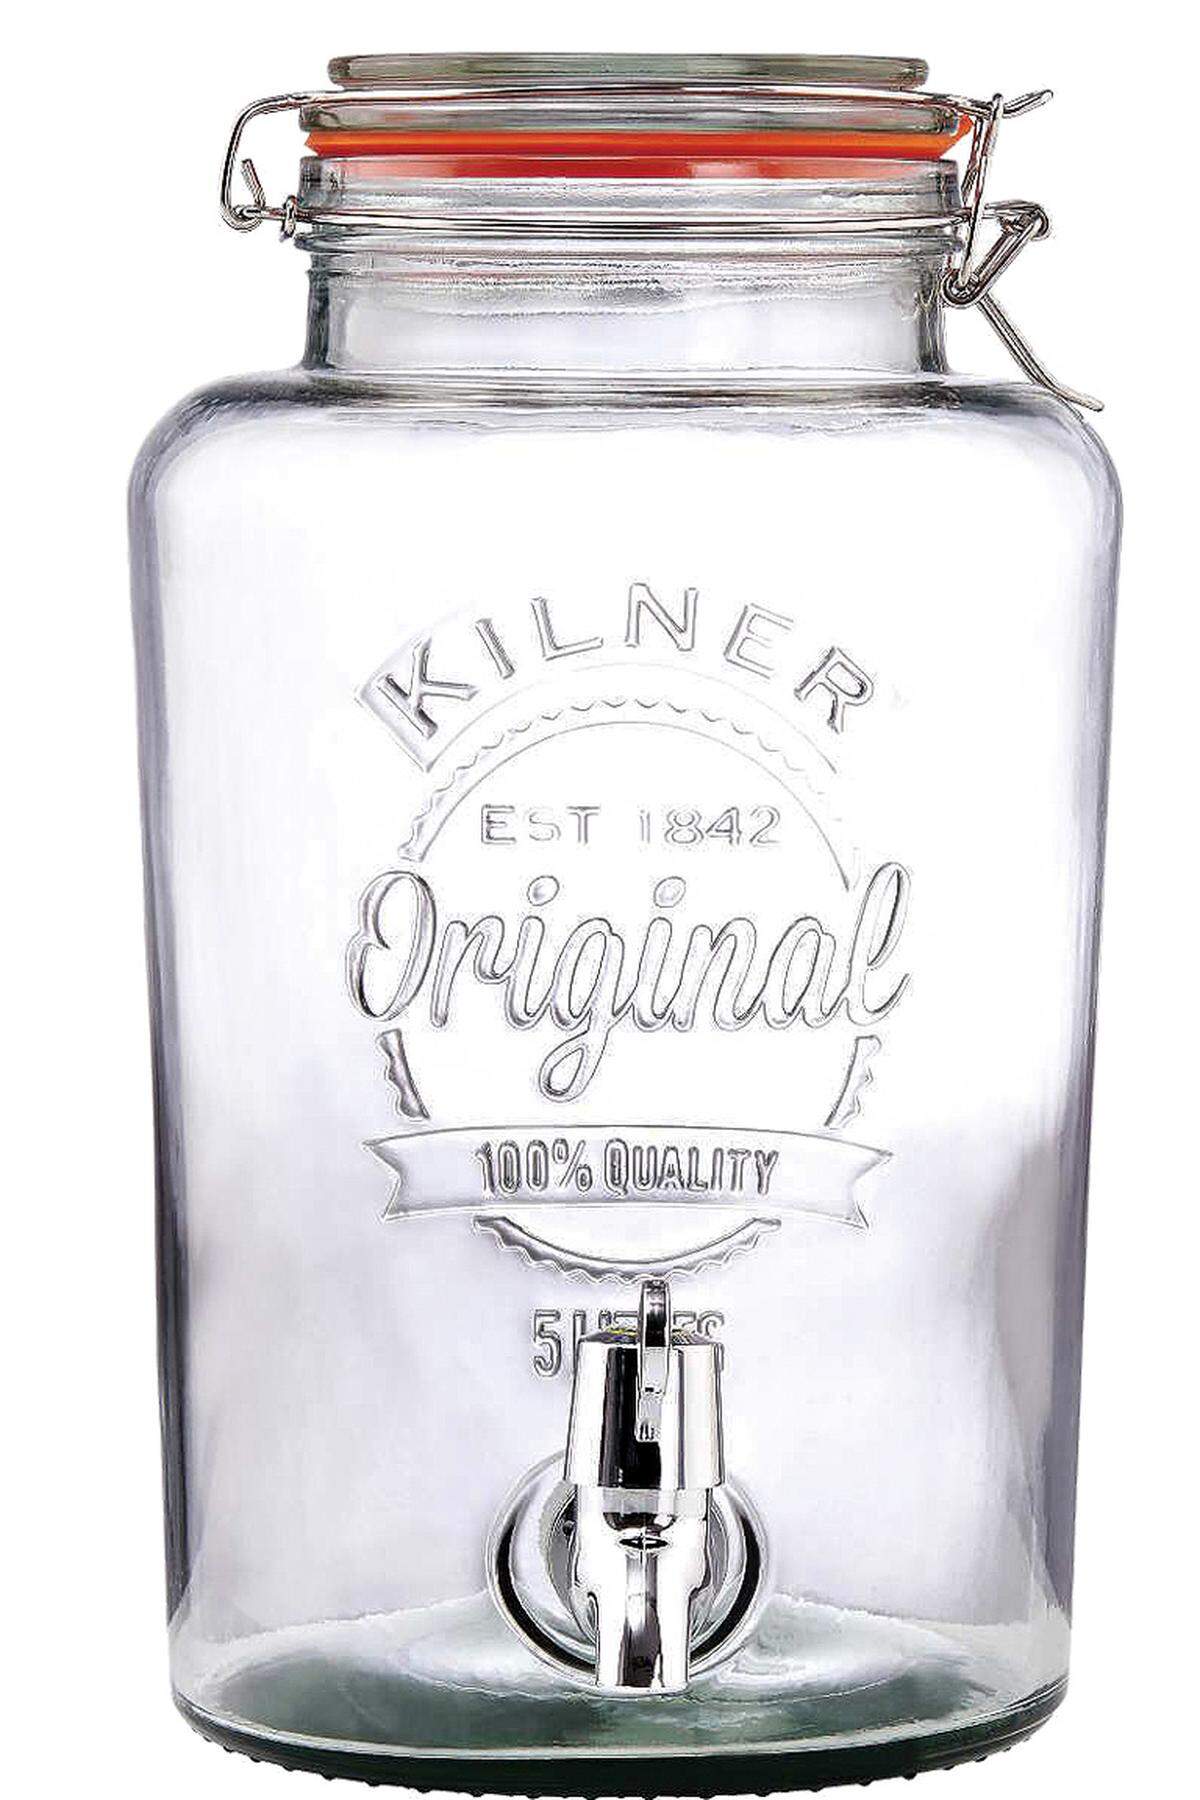 Getränkespender von Kilner, 39,90 Euro, erhältlich etwa bei Butlers, Mariahilfer Straße 42–48, 1060 Wien 